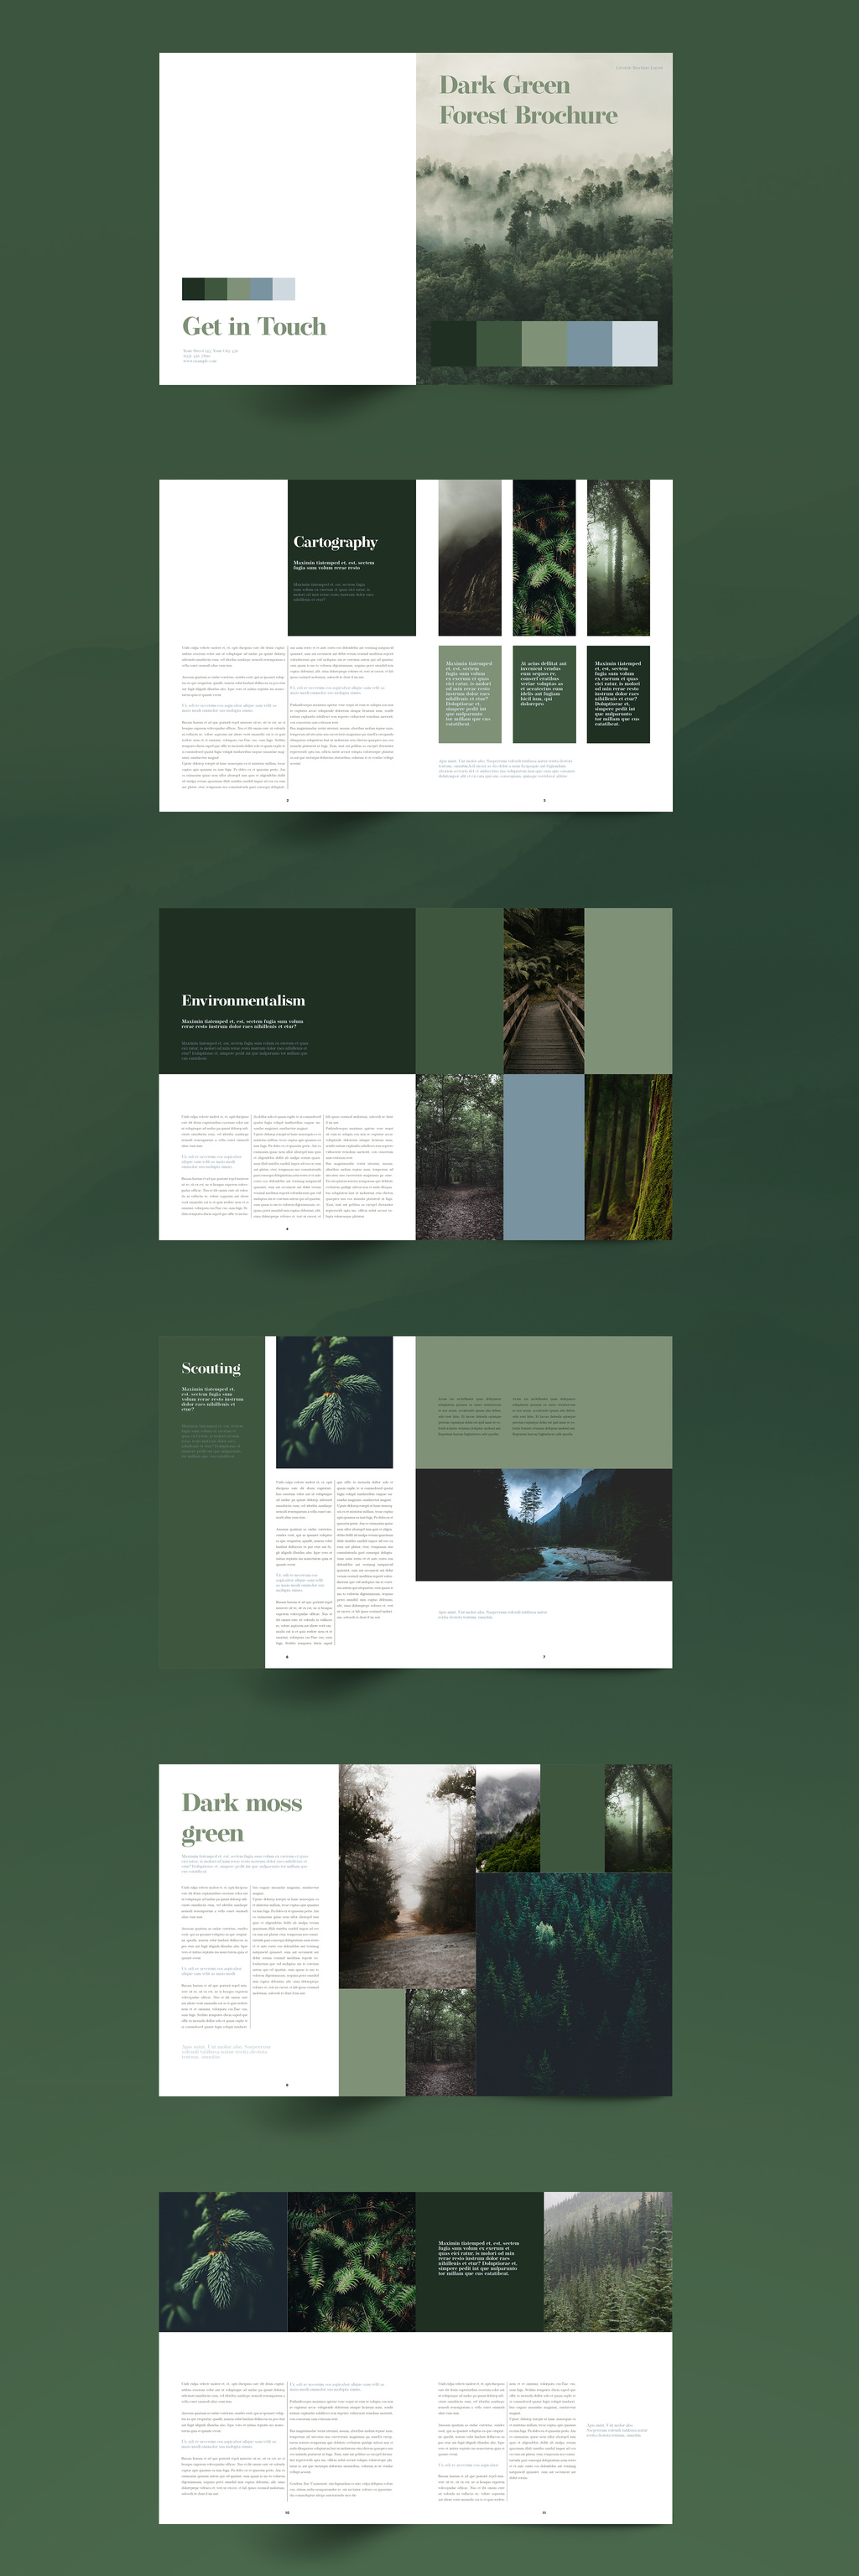 绿色主题森林杂志宣传册设计模板